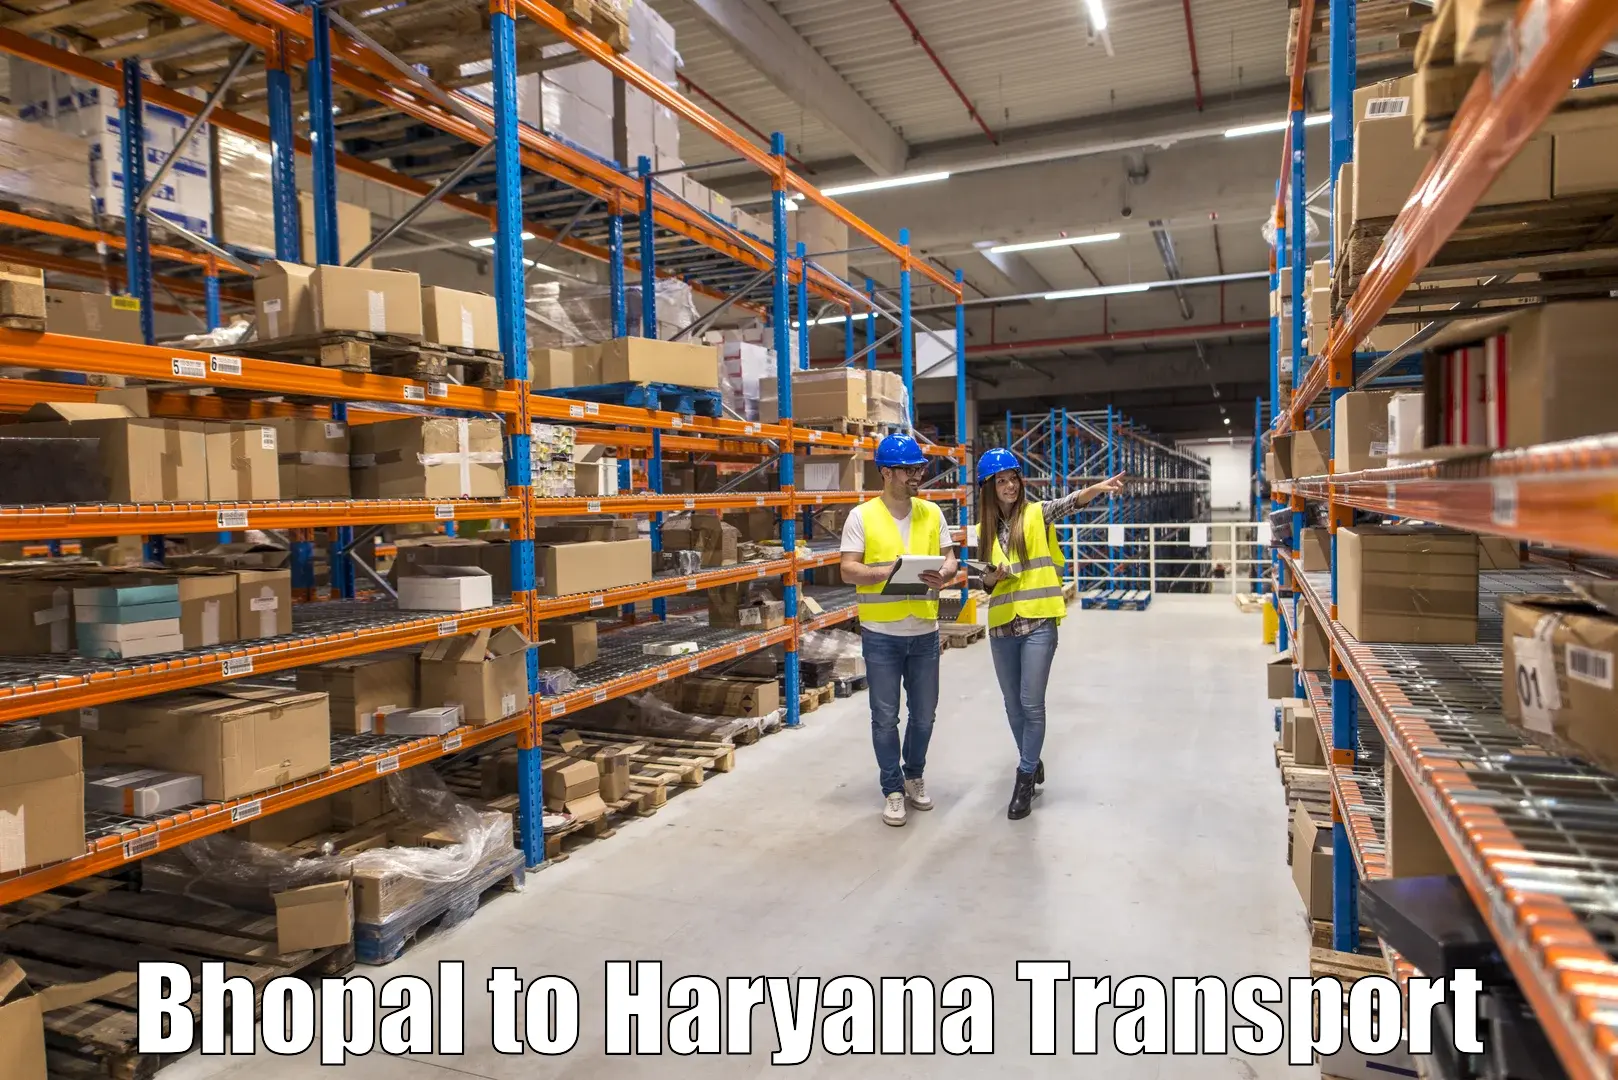 Furniture transport service Bhopal to Ambala